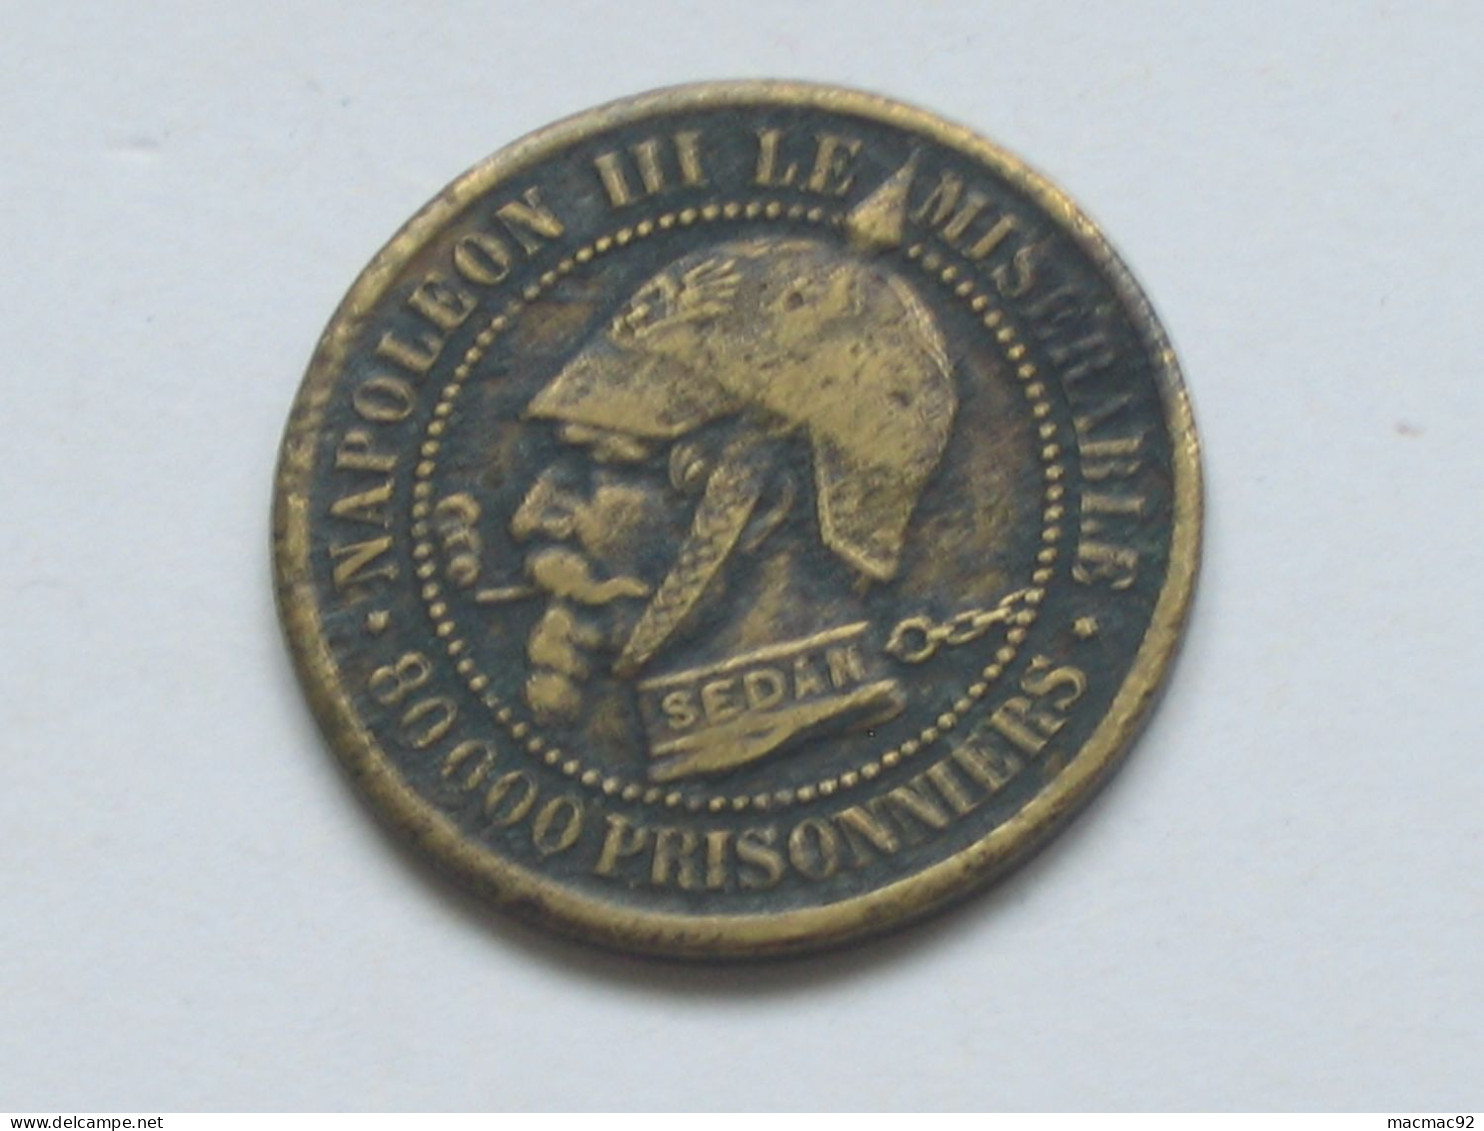 Monnaie Satirique Sur 5 Centimes Napoléon III Le Misérable - 80 000 Prisonniers **** EN ACHAT IMMÉDIAT **** - Variétés Et Curiosités